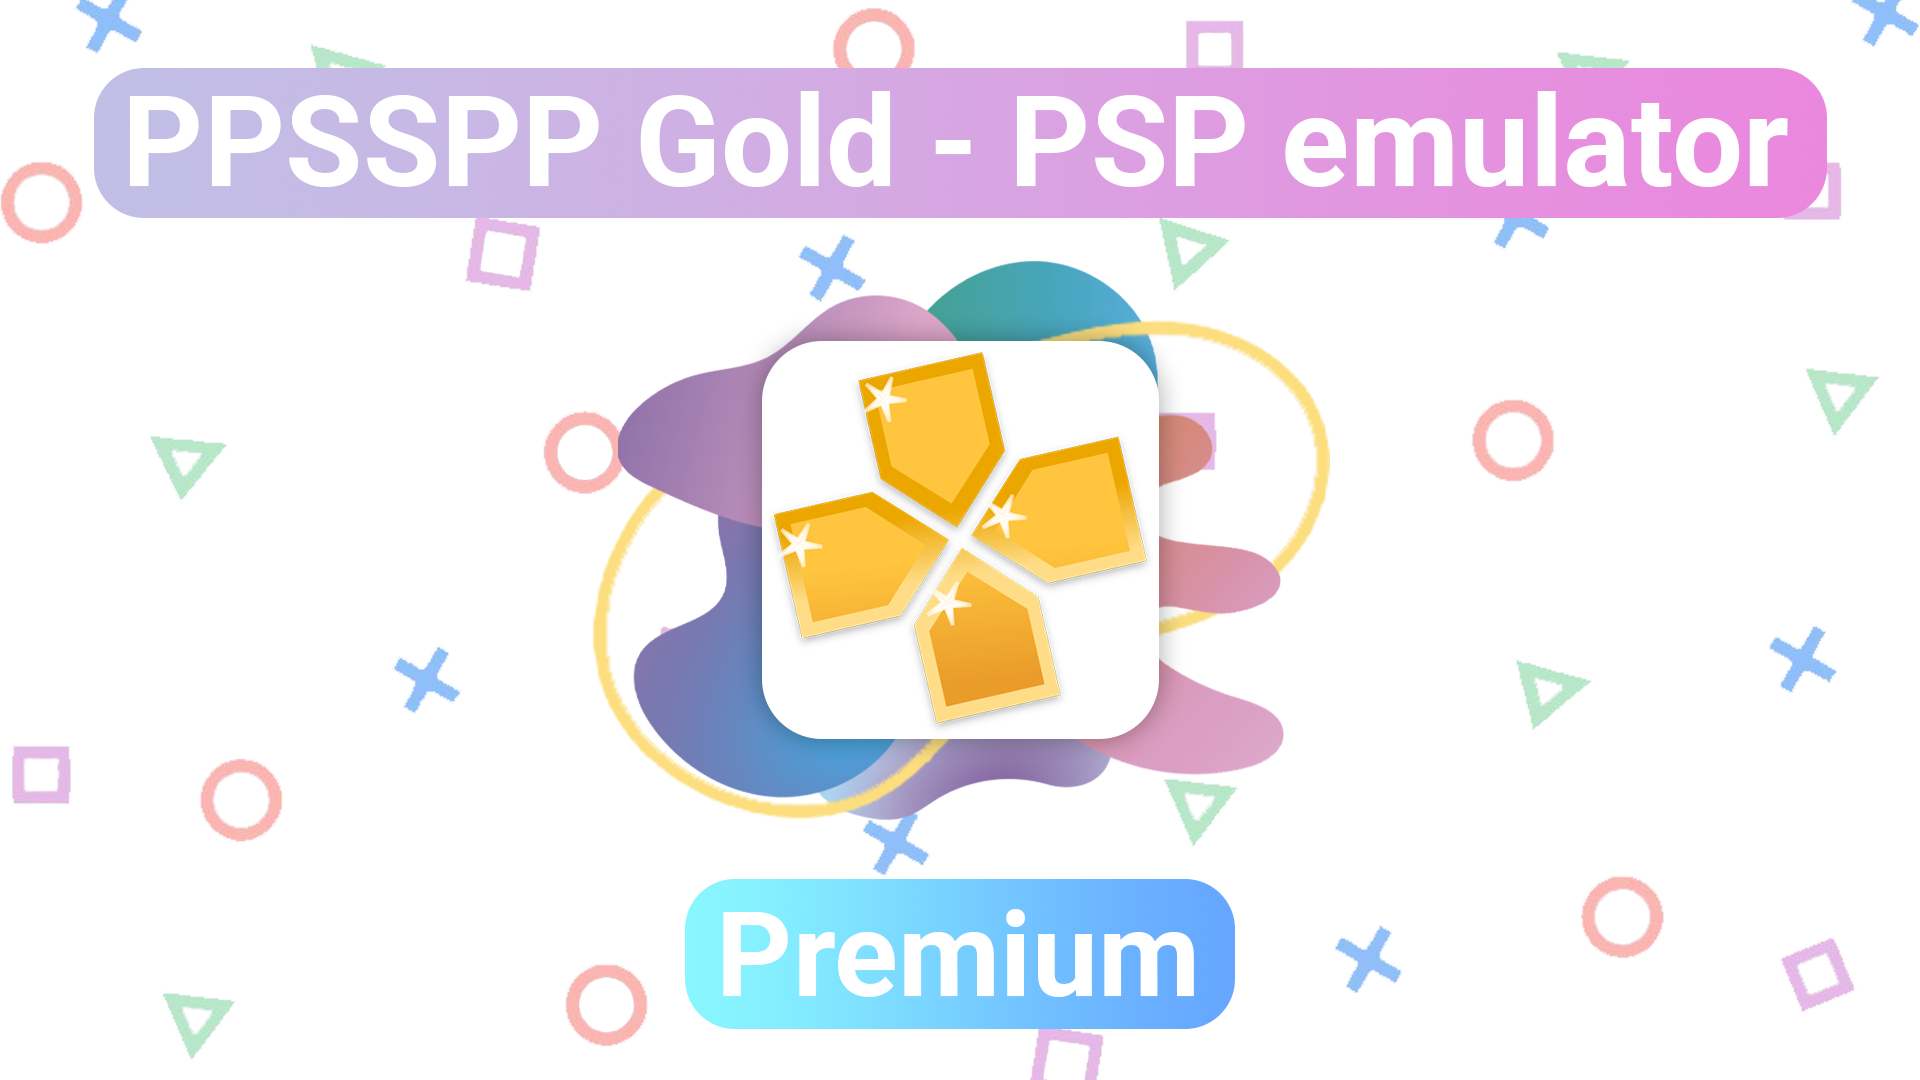 PPSSPP-Gold-PSP-emulator-todo-desbloqueado-ultima-version-para-android